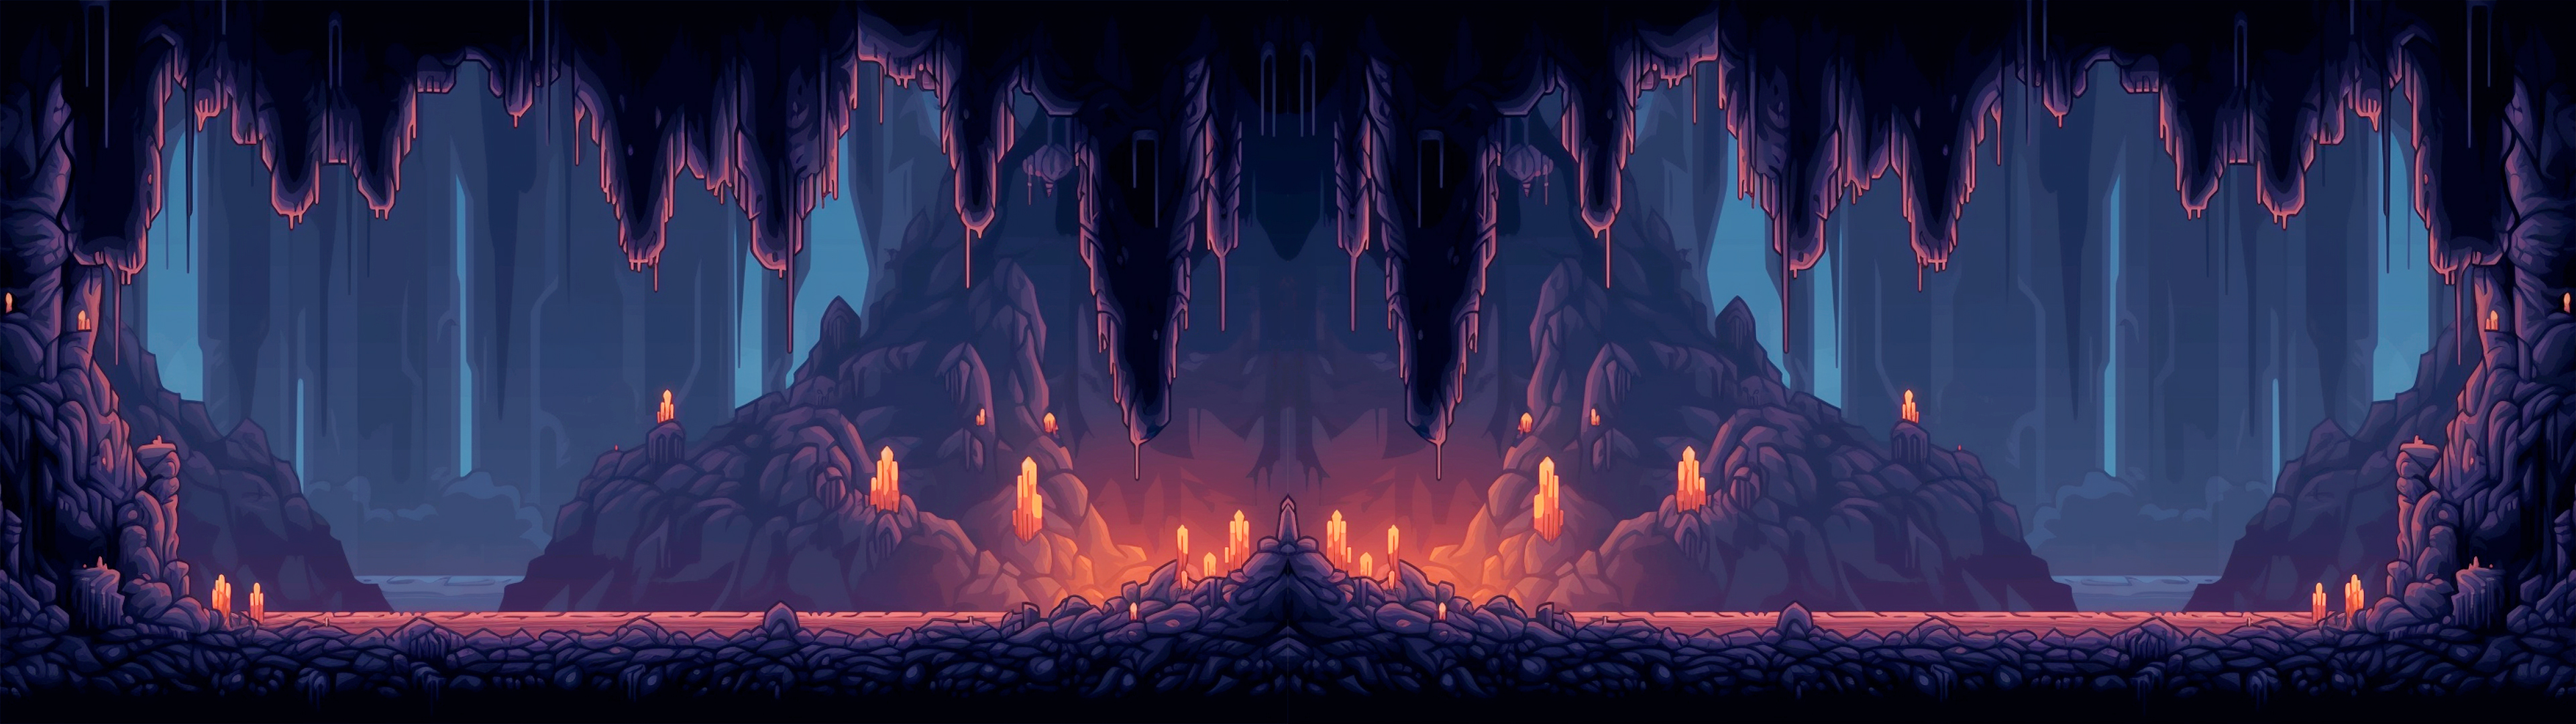 Dark Cavern Tiled Background Set